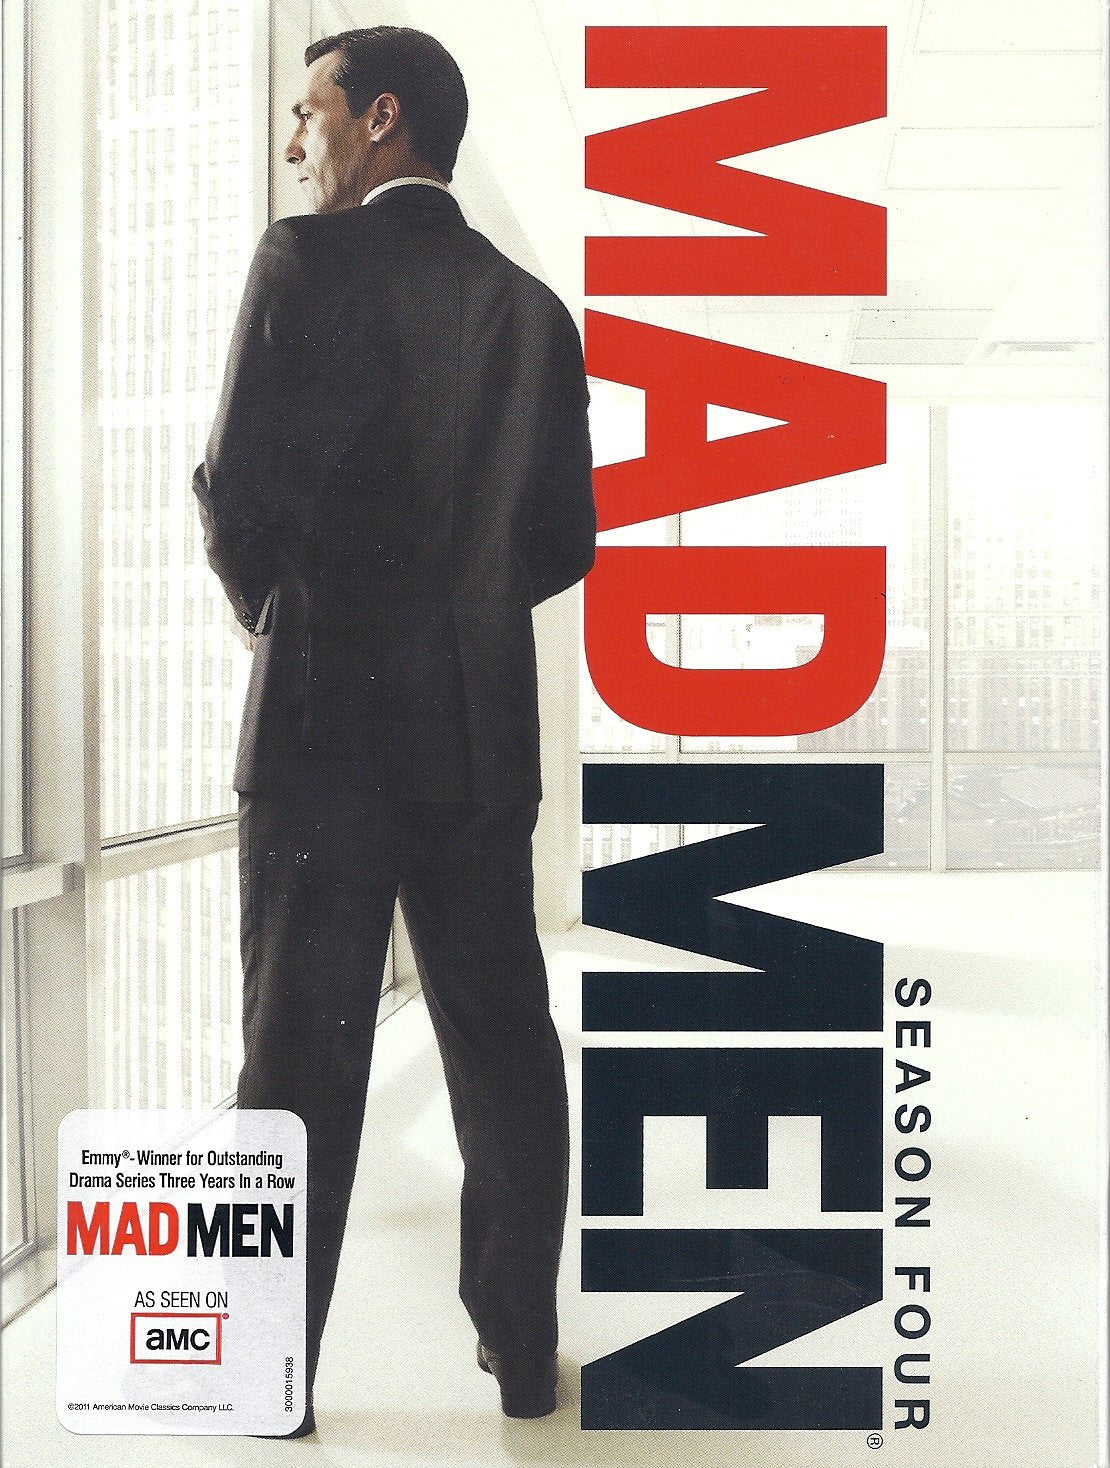 Mad Men Season 4